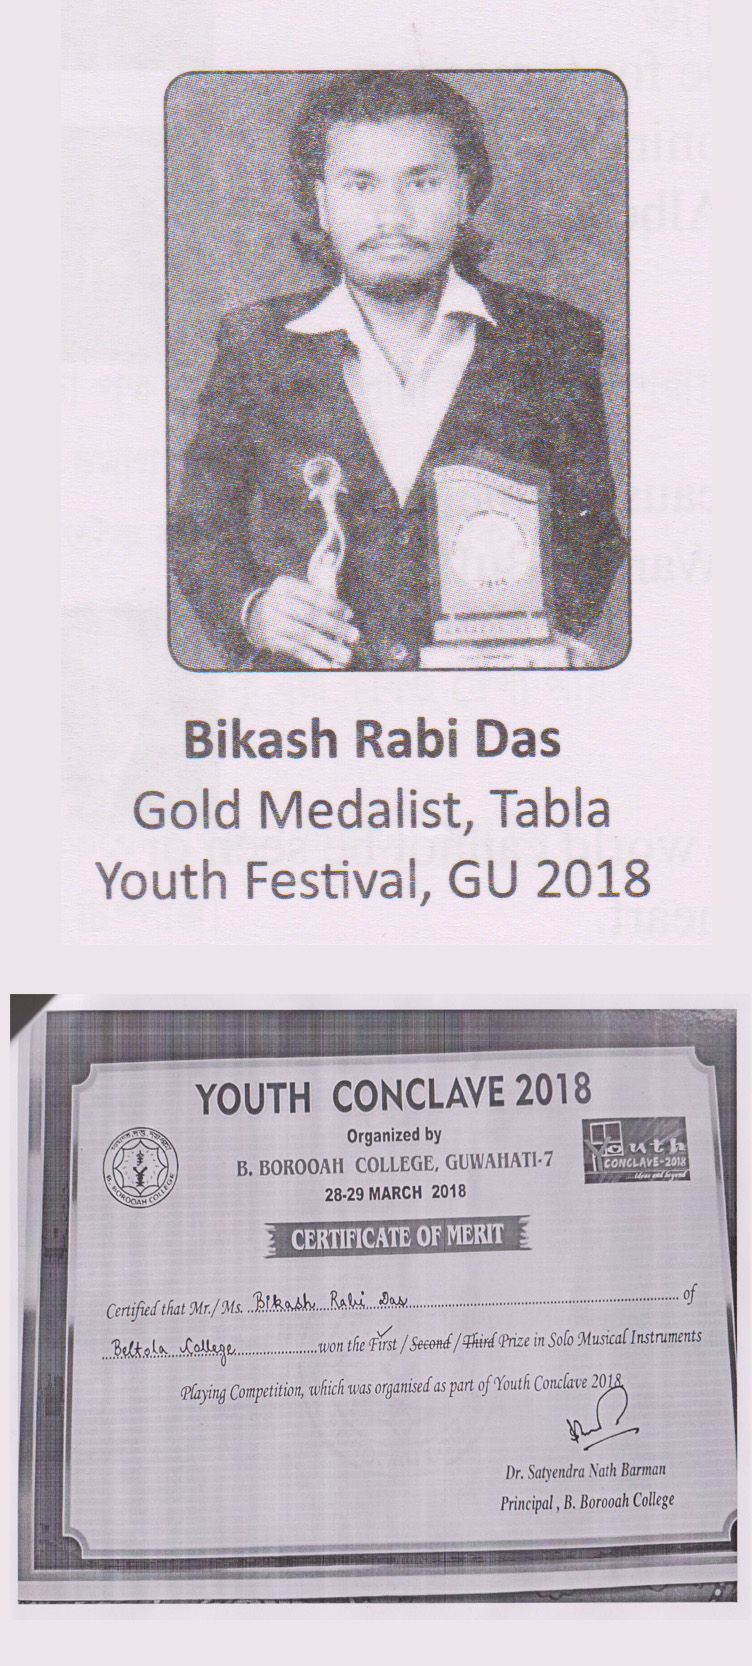 Bikash Rabi Das Gold Medalist Tabla Youth Festival GU 2018